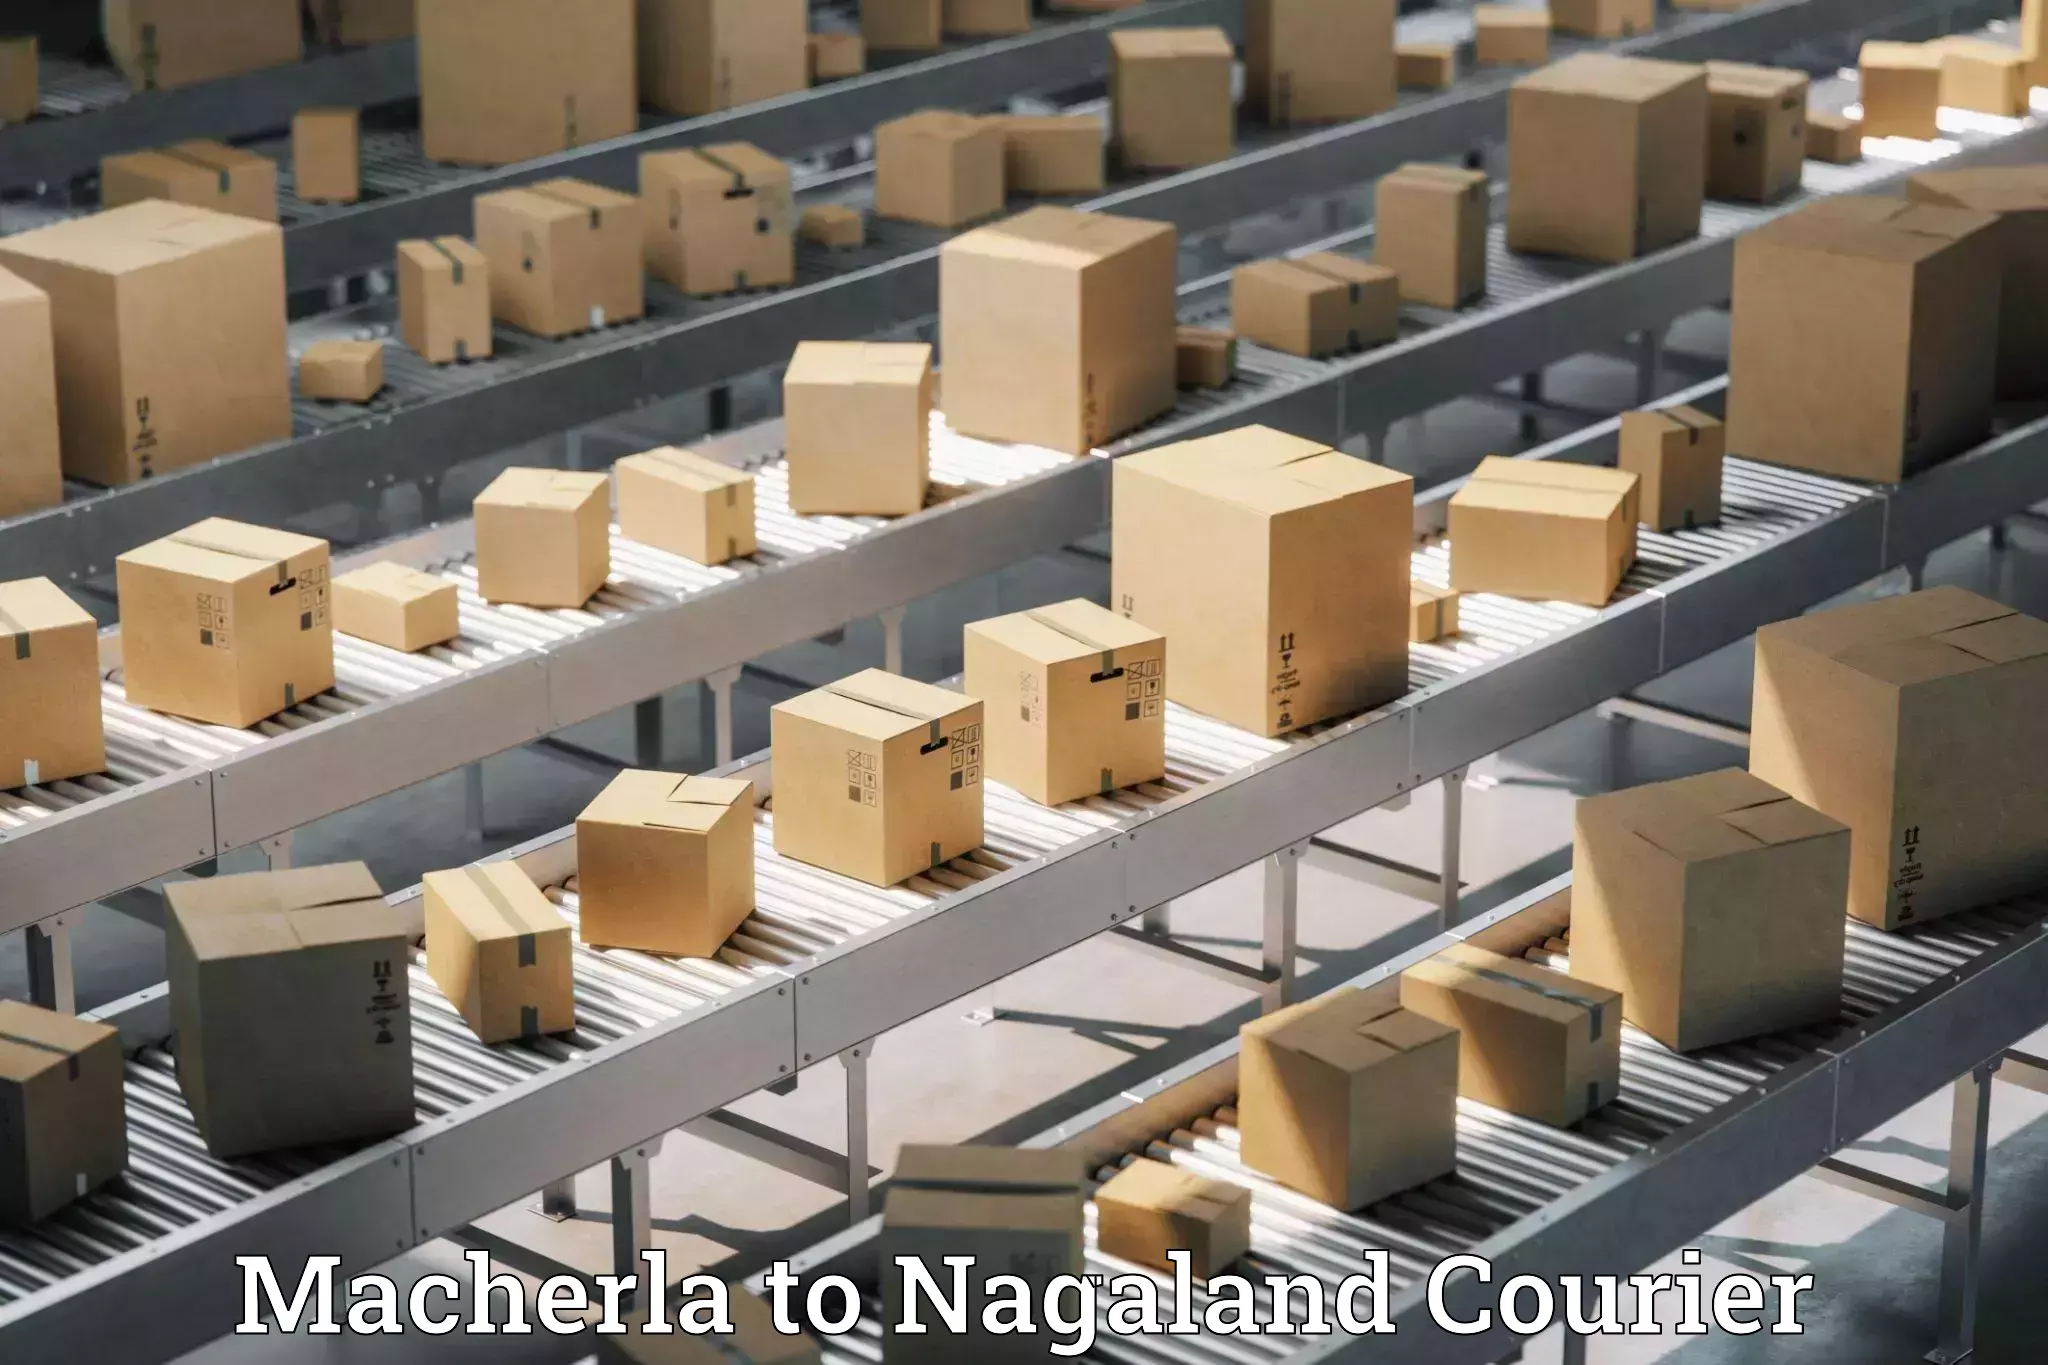 Cash on delivery service Macherla to NIT Nagaland